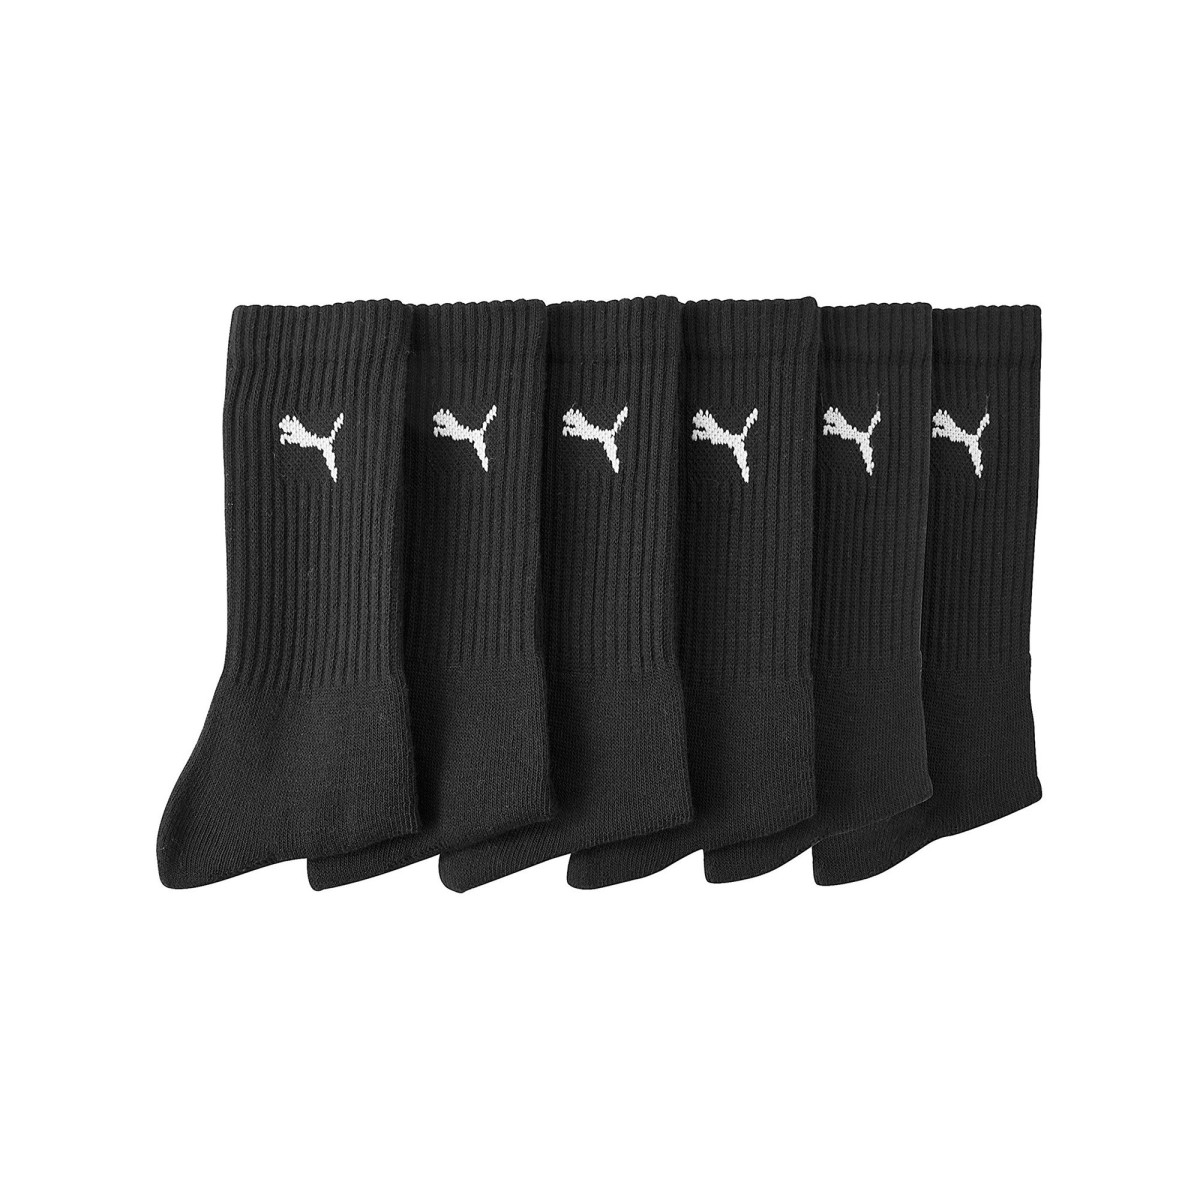 Blancheporte Sada 6 párů sportovních ponožek PUMA, černé černá 3942